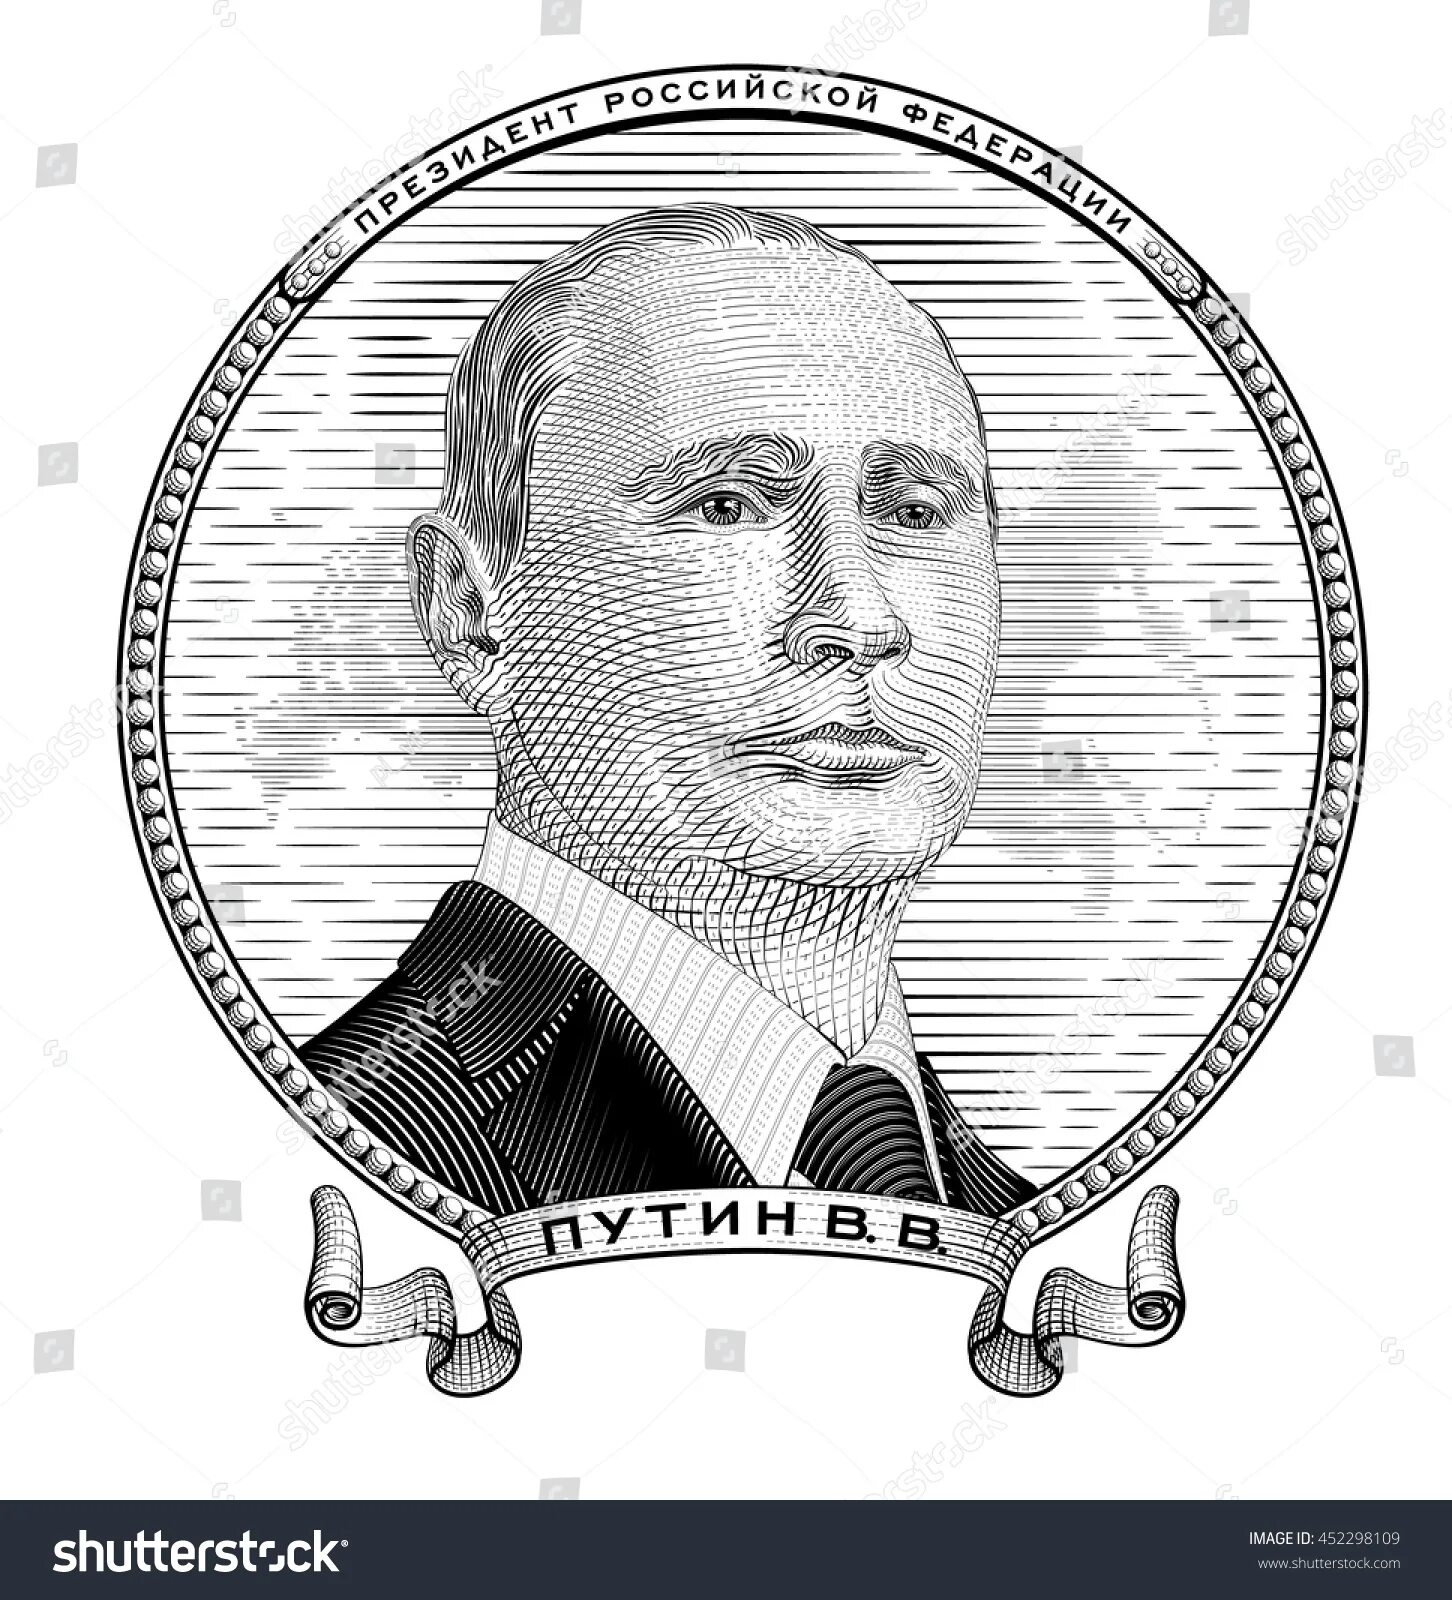 Putin Vladimir Vladimirovich #4